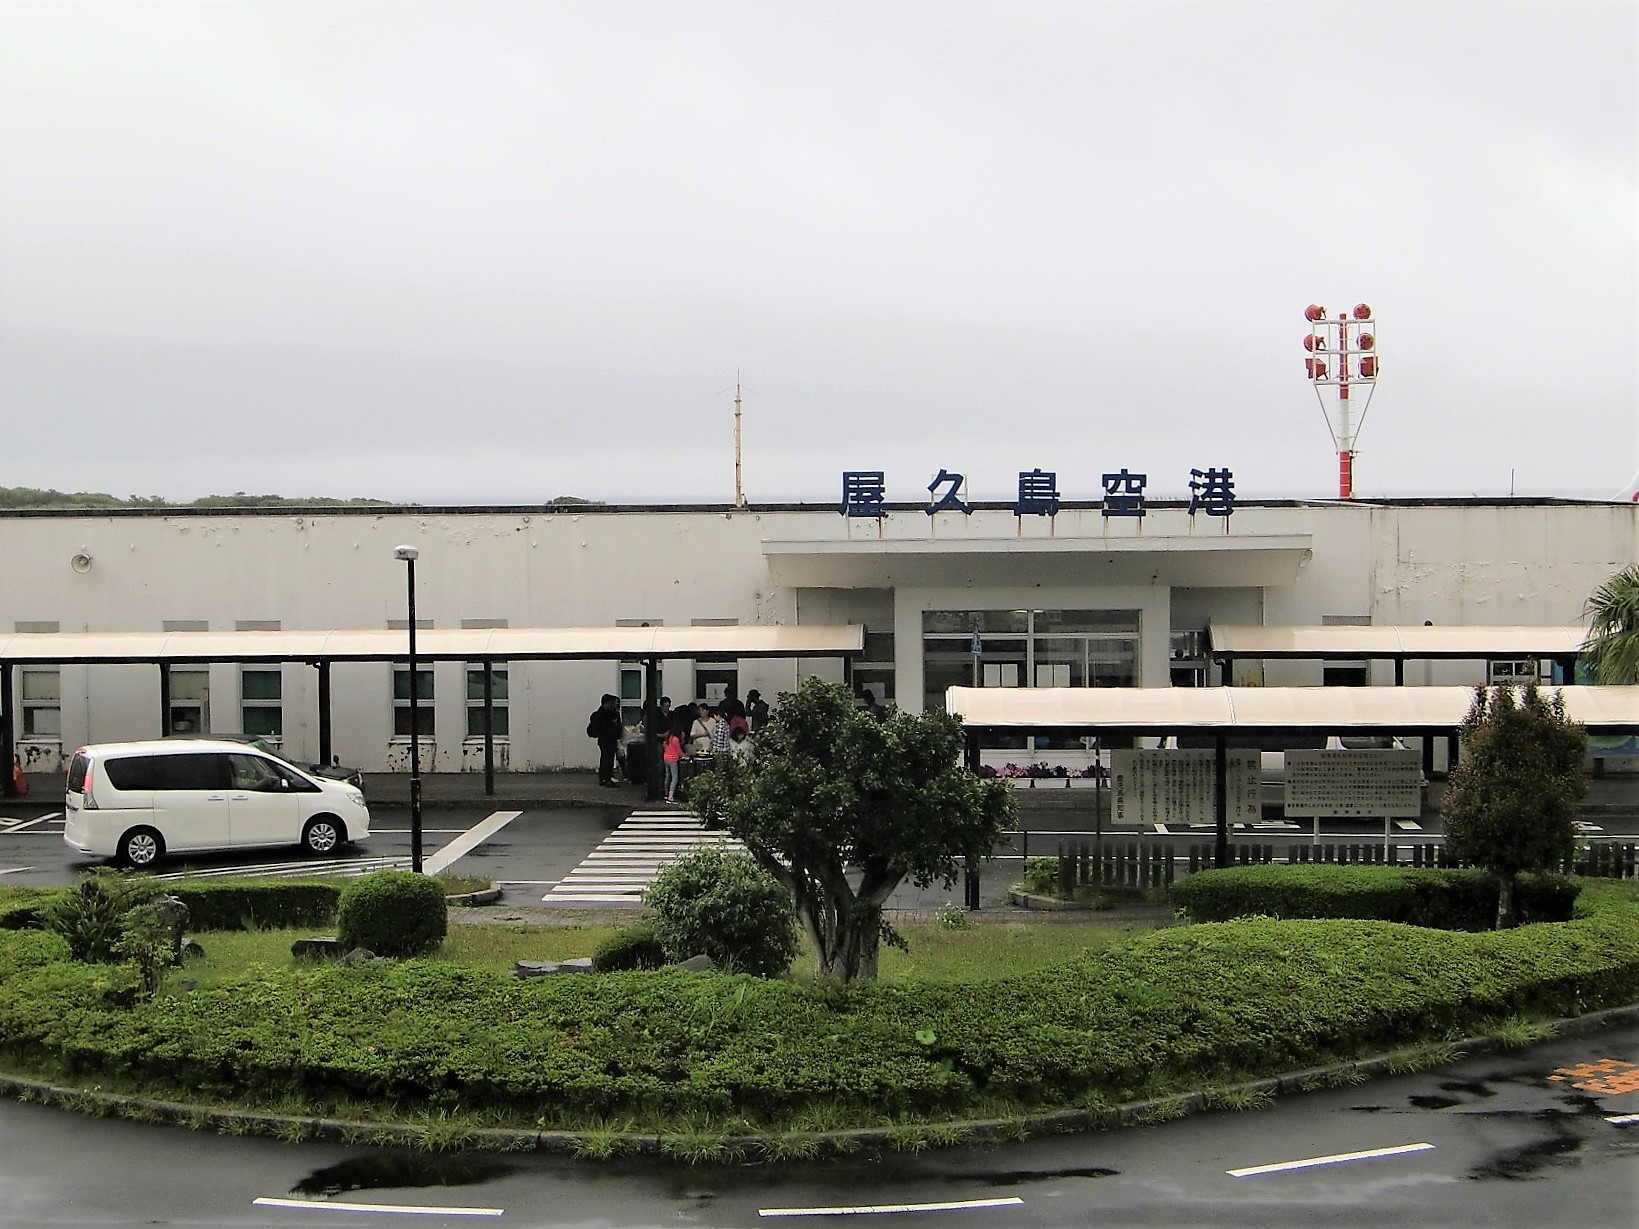 屋久島空港